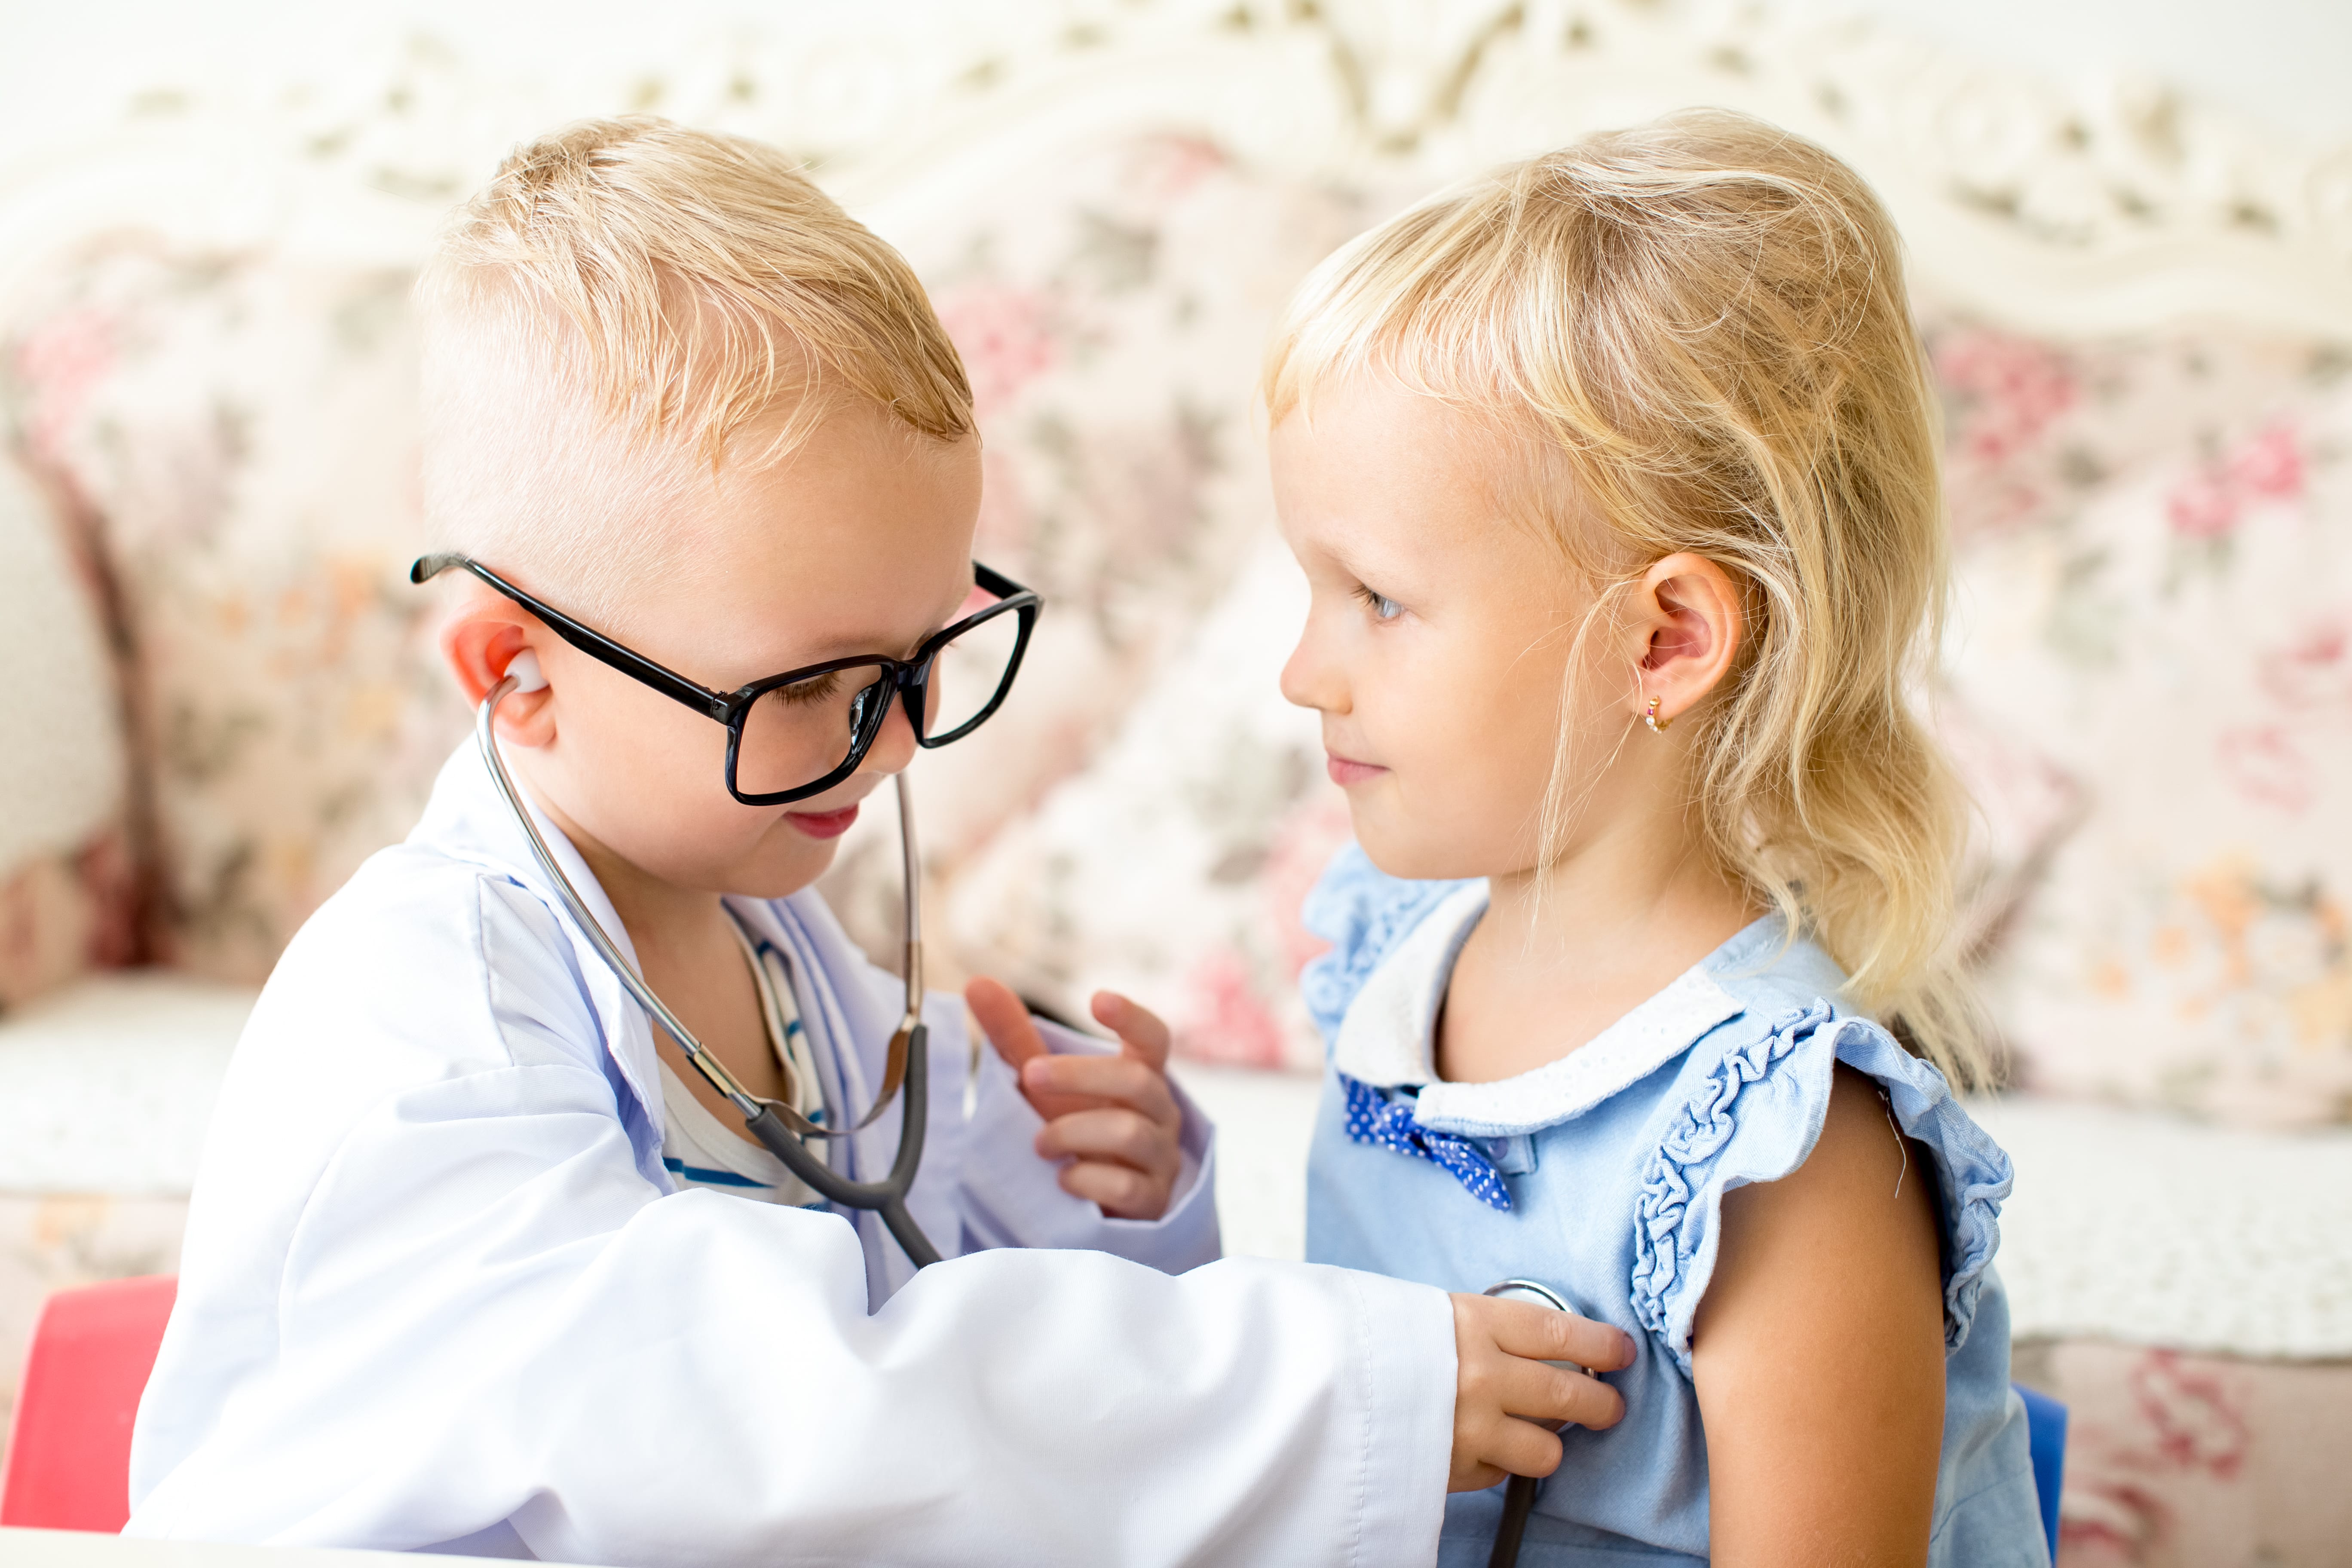 Pediatrie: perspective de dezvoltare profesionala pentru medici si competente medicale